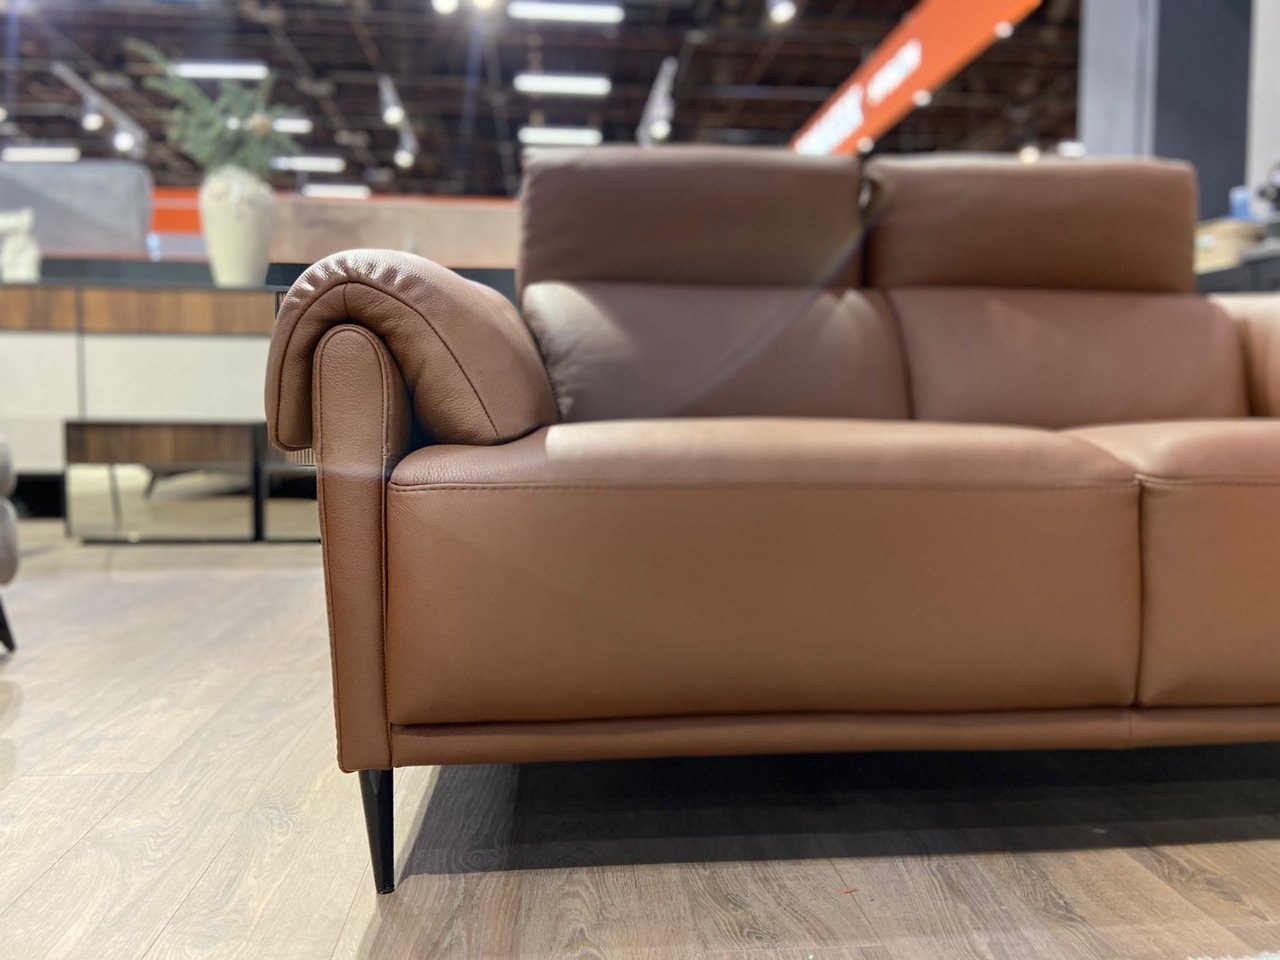 Итальянский диван от NICOLETTIHOME BRAMBLE в коже — ₽, купить у официального дилера Nicolettihome